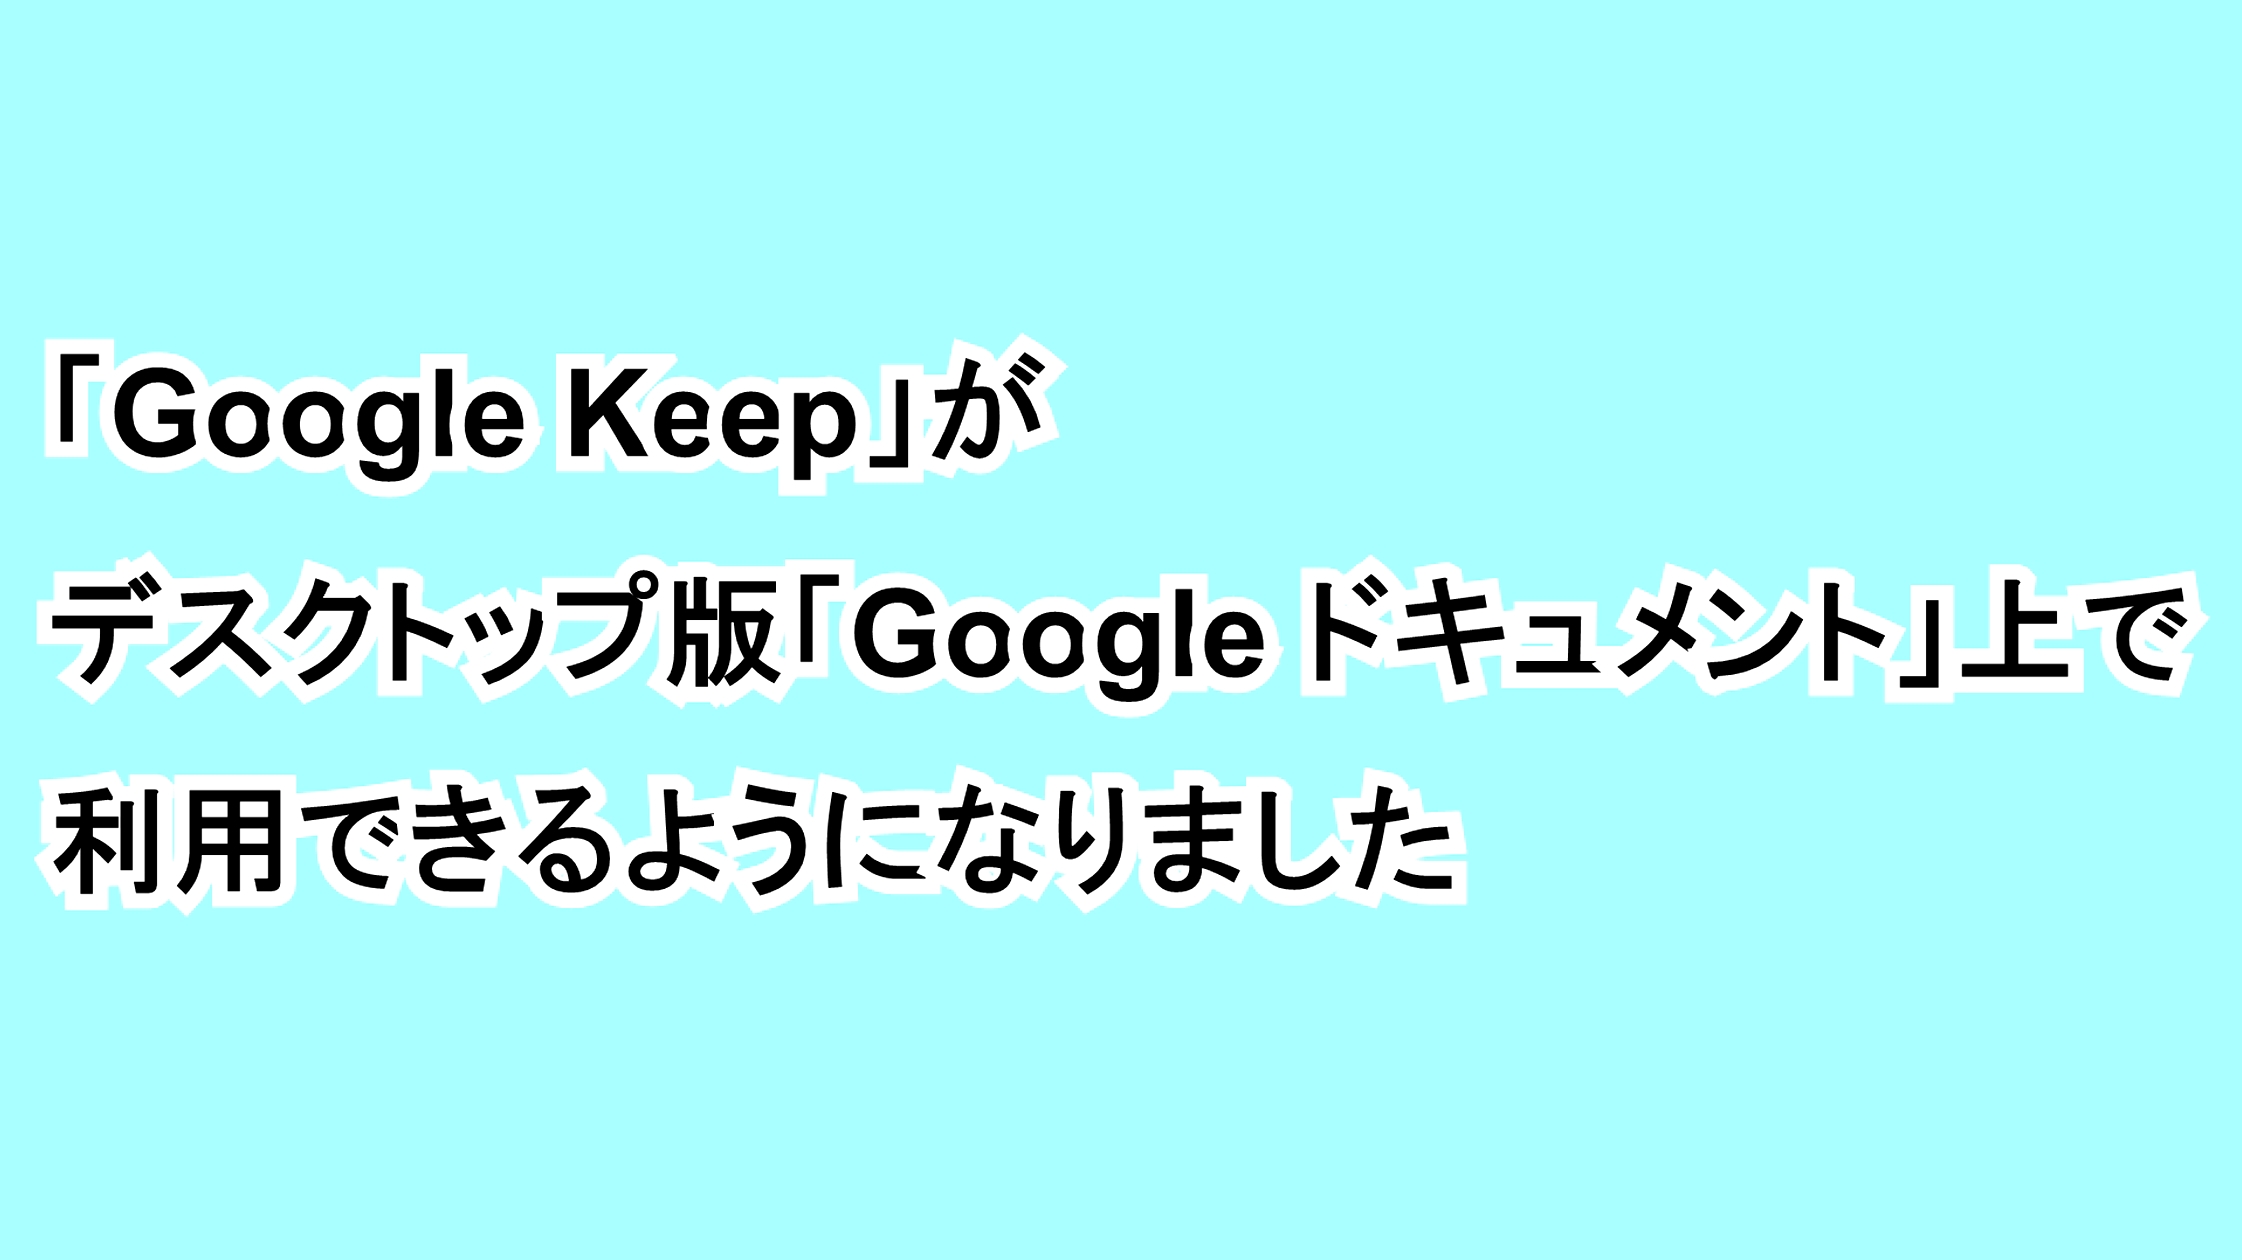 「Google Keep」がデスクトップ版「Google ドキュメント」上で利用できるようになりました